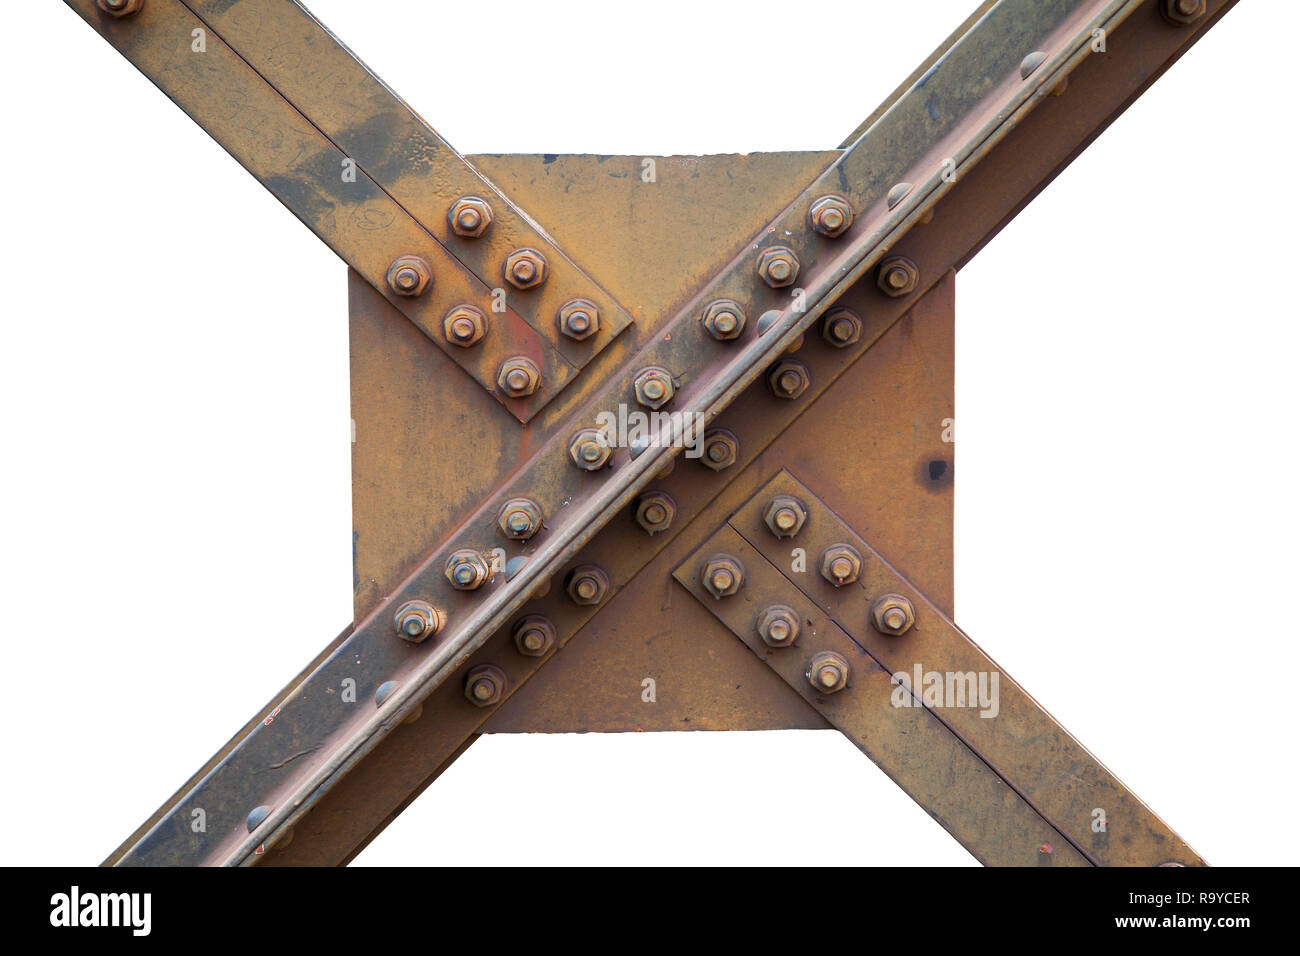 Un forte travi in acciaio struttura di un ponte ferroviario con dadi e bulloni in acciaio a vite per i ponti ferroviari basato sulla forza. Foto Stock